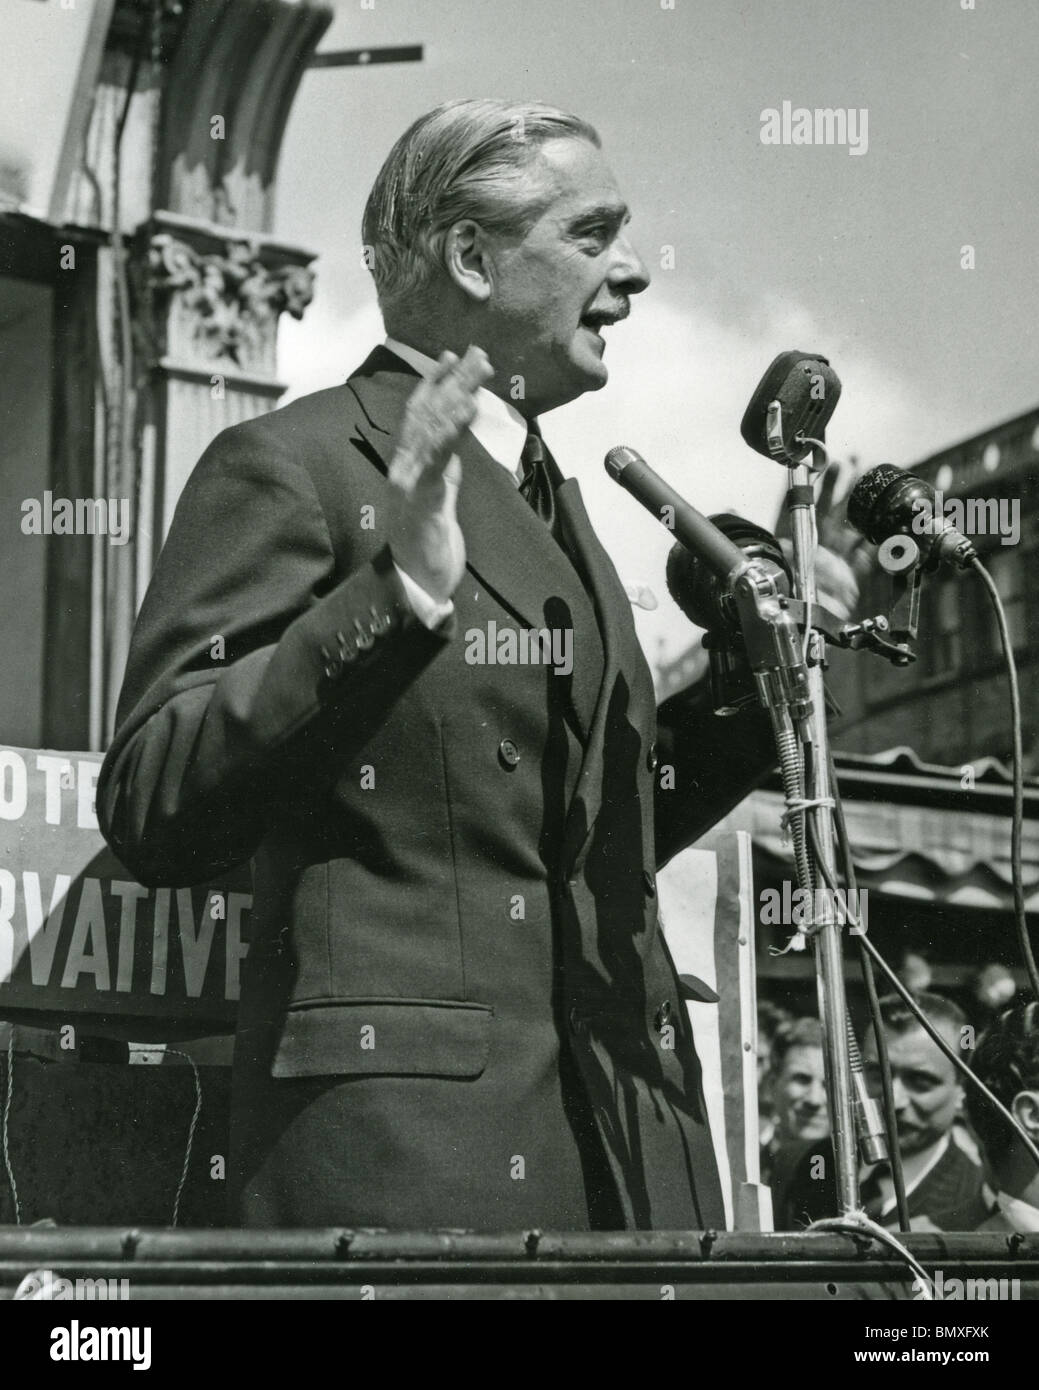 SIR ANTHONY EDEN campagne en 1955 quand il est devenu Premier ministre britannique Banque D'Images